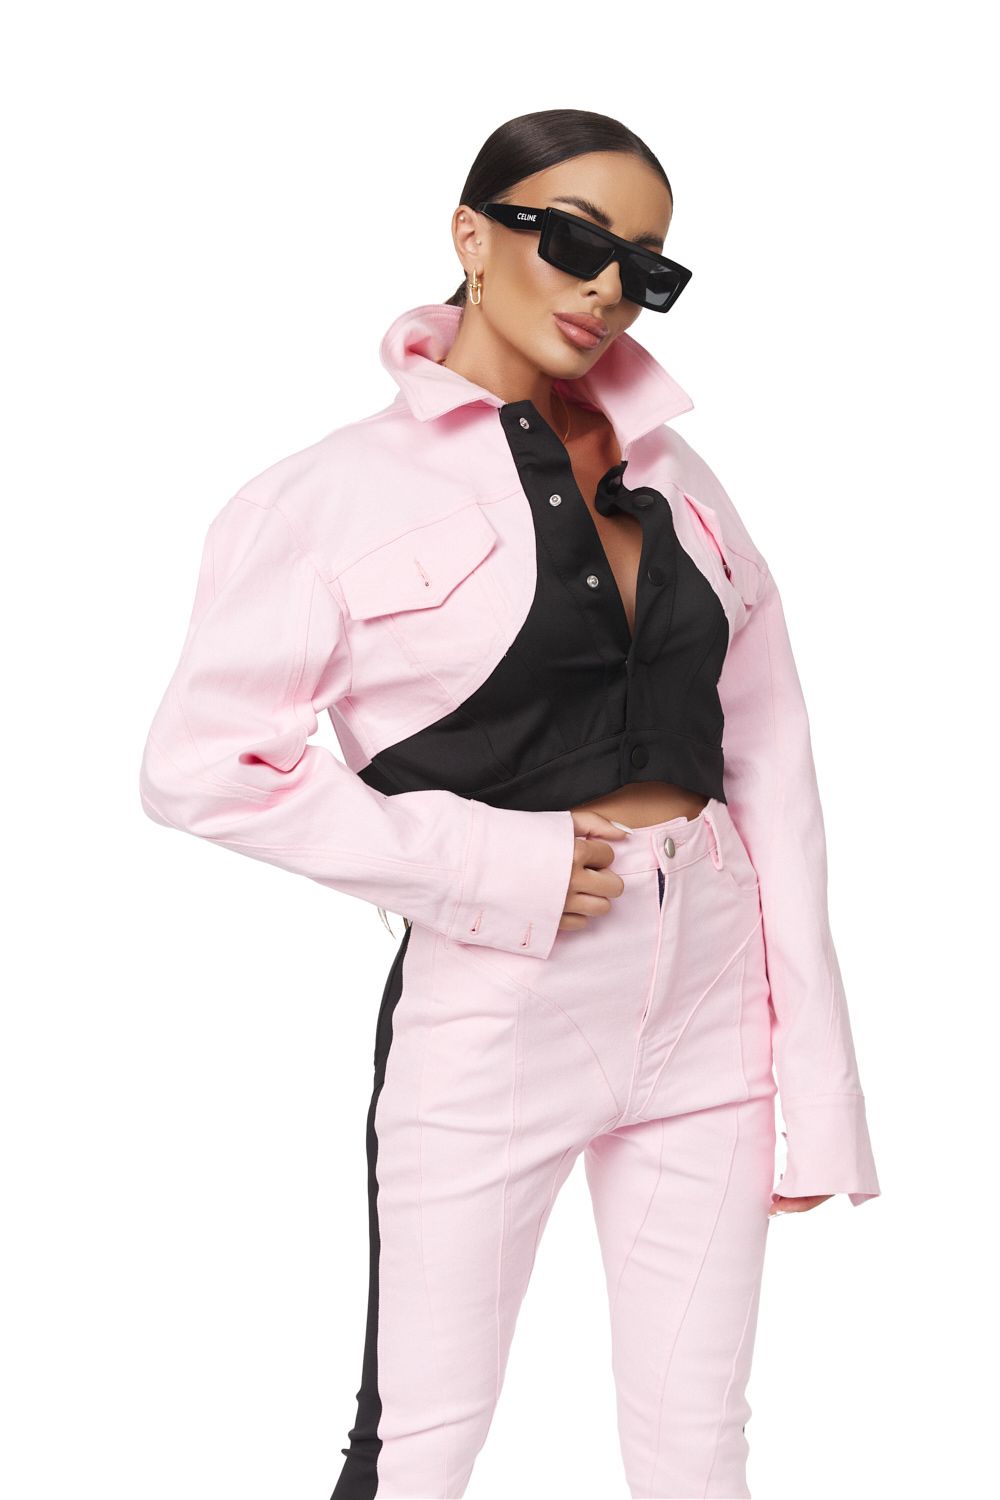 Yezia Bogas short pink jacket for women